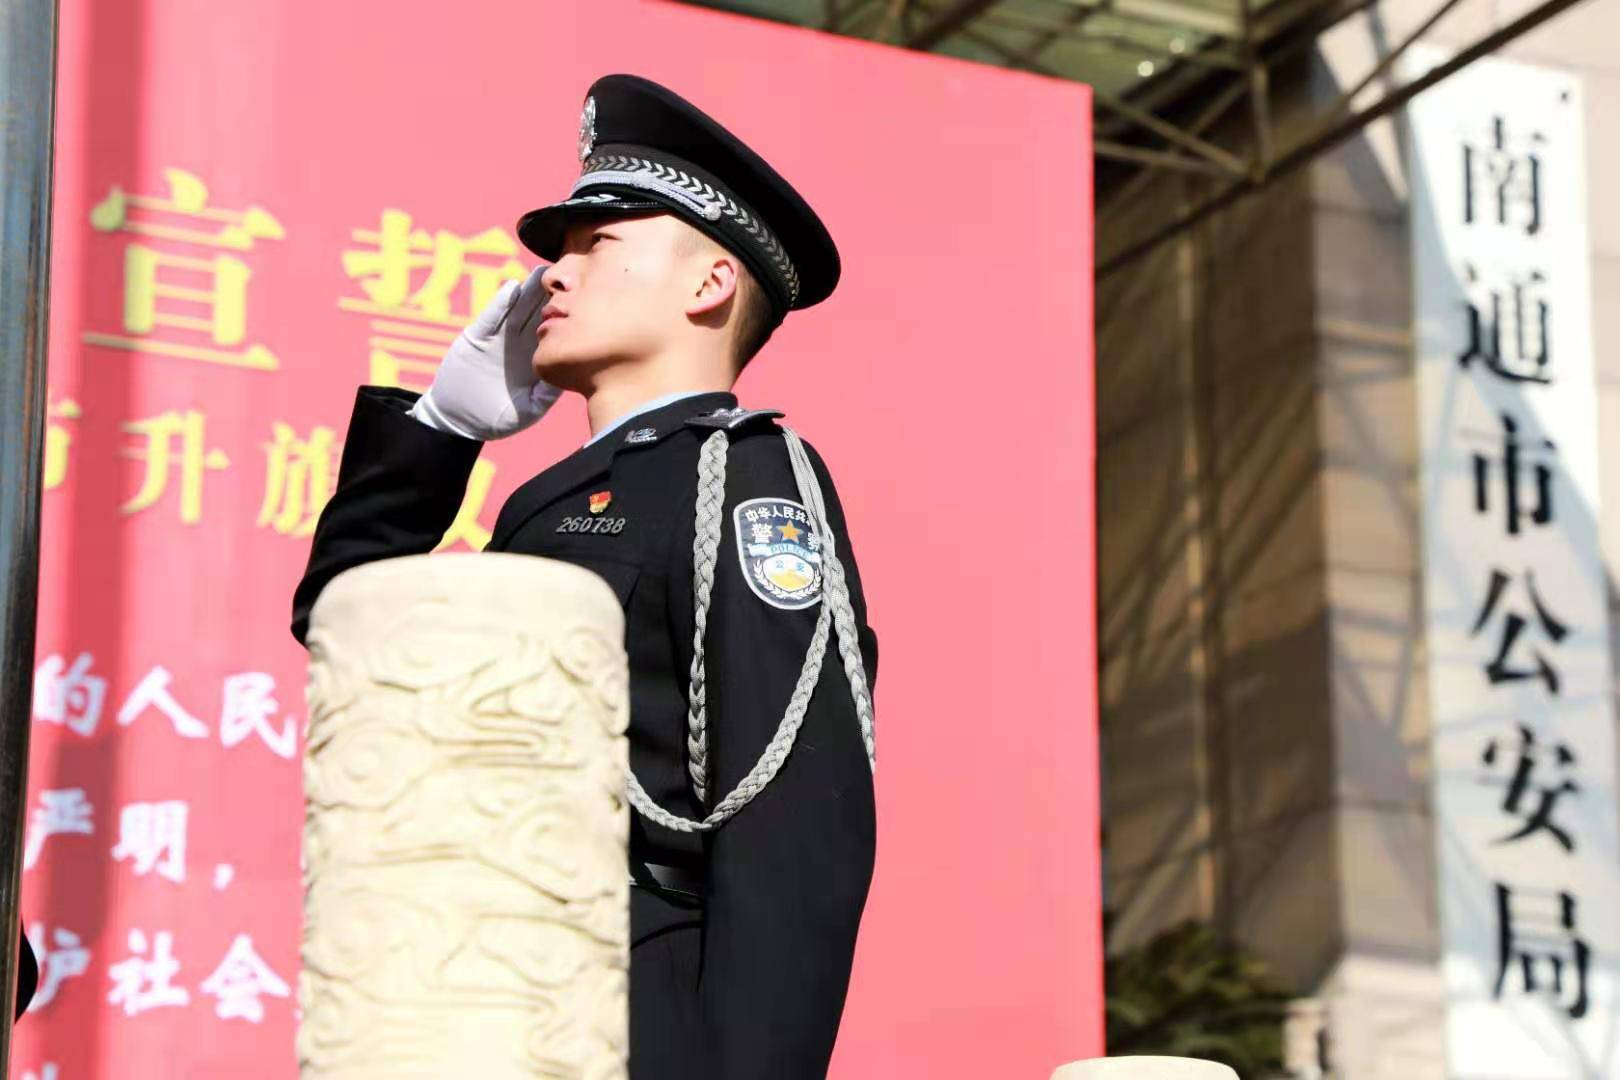 庆祝首个中国警察节,南通公安向国旗敬礼向警旗宣誓